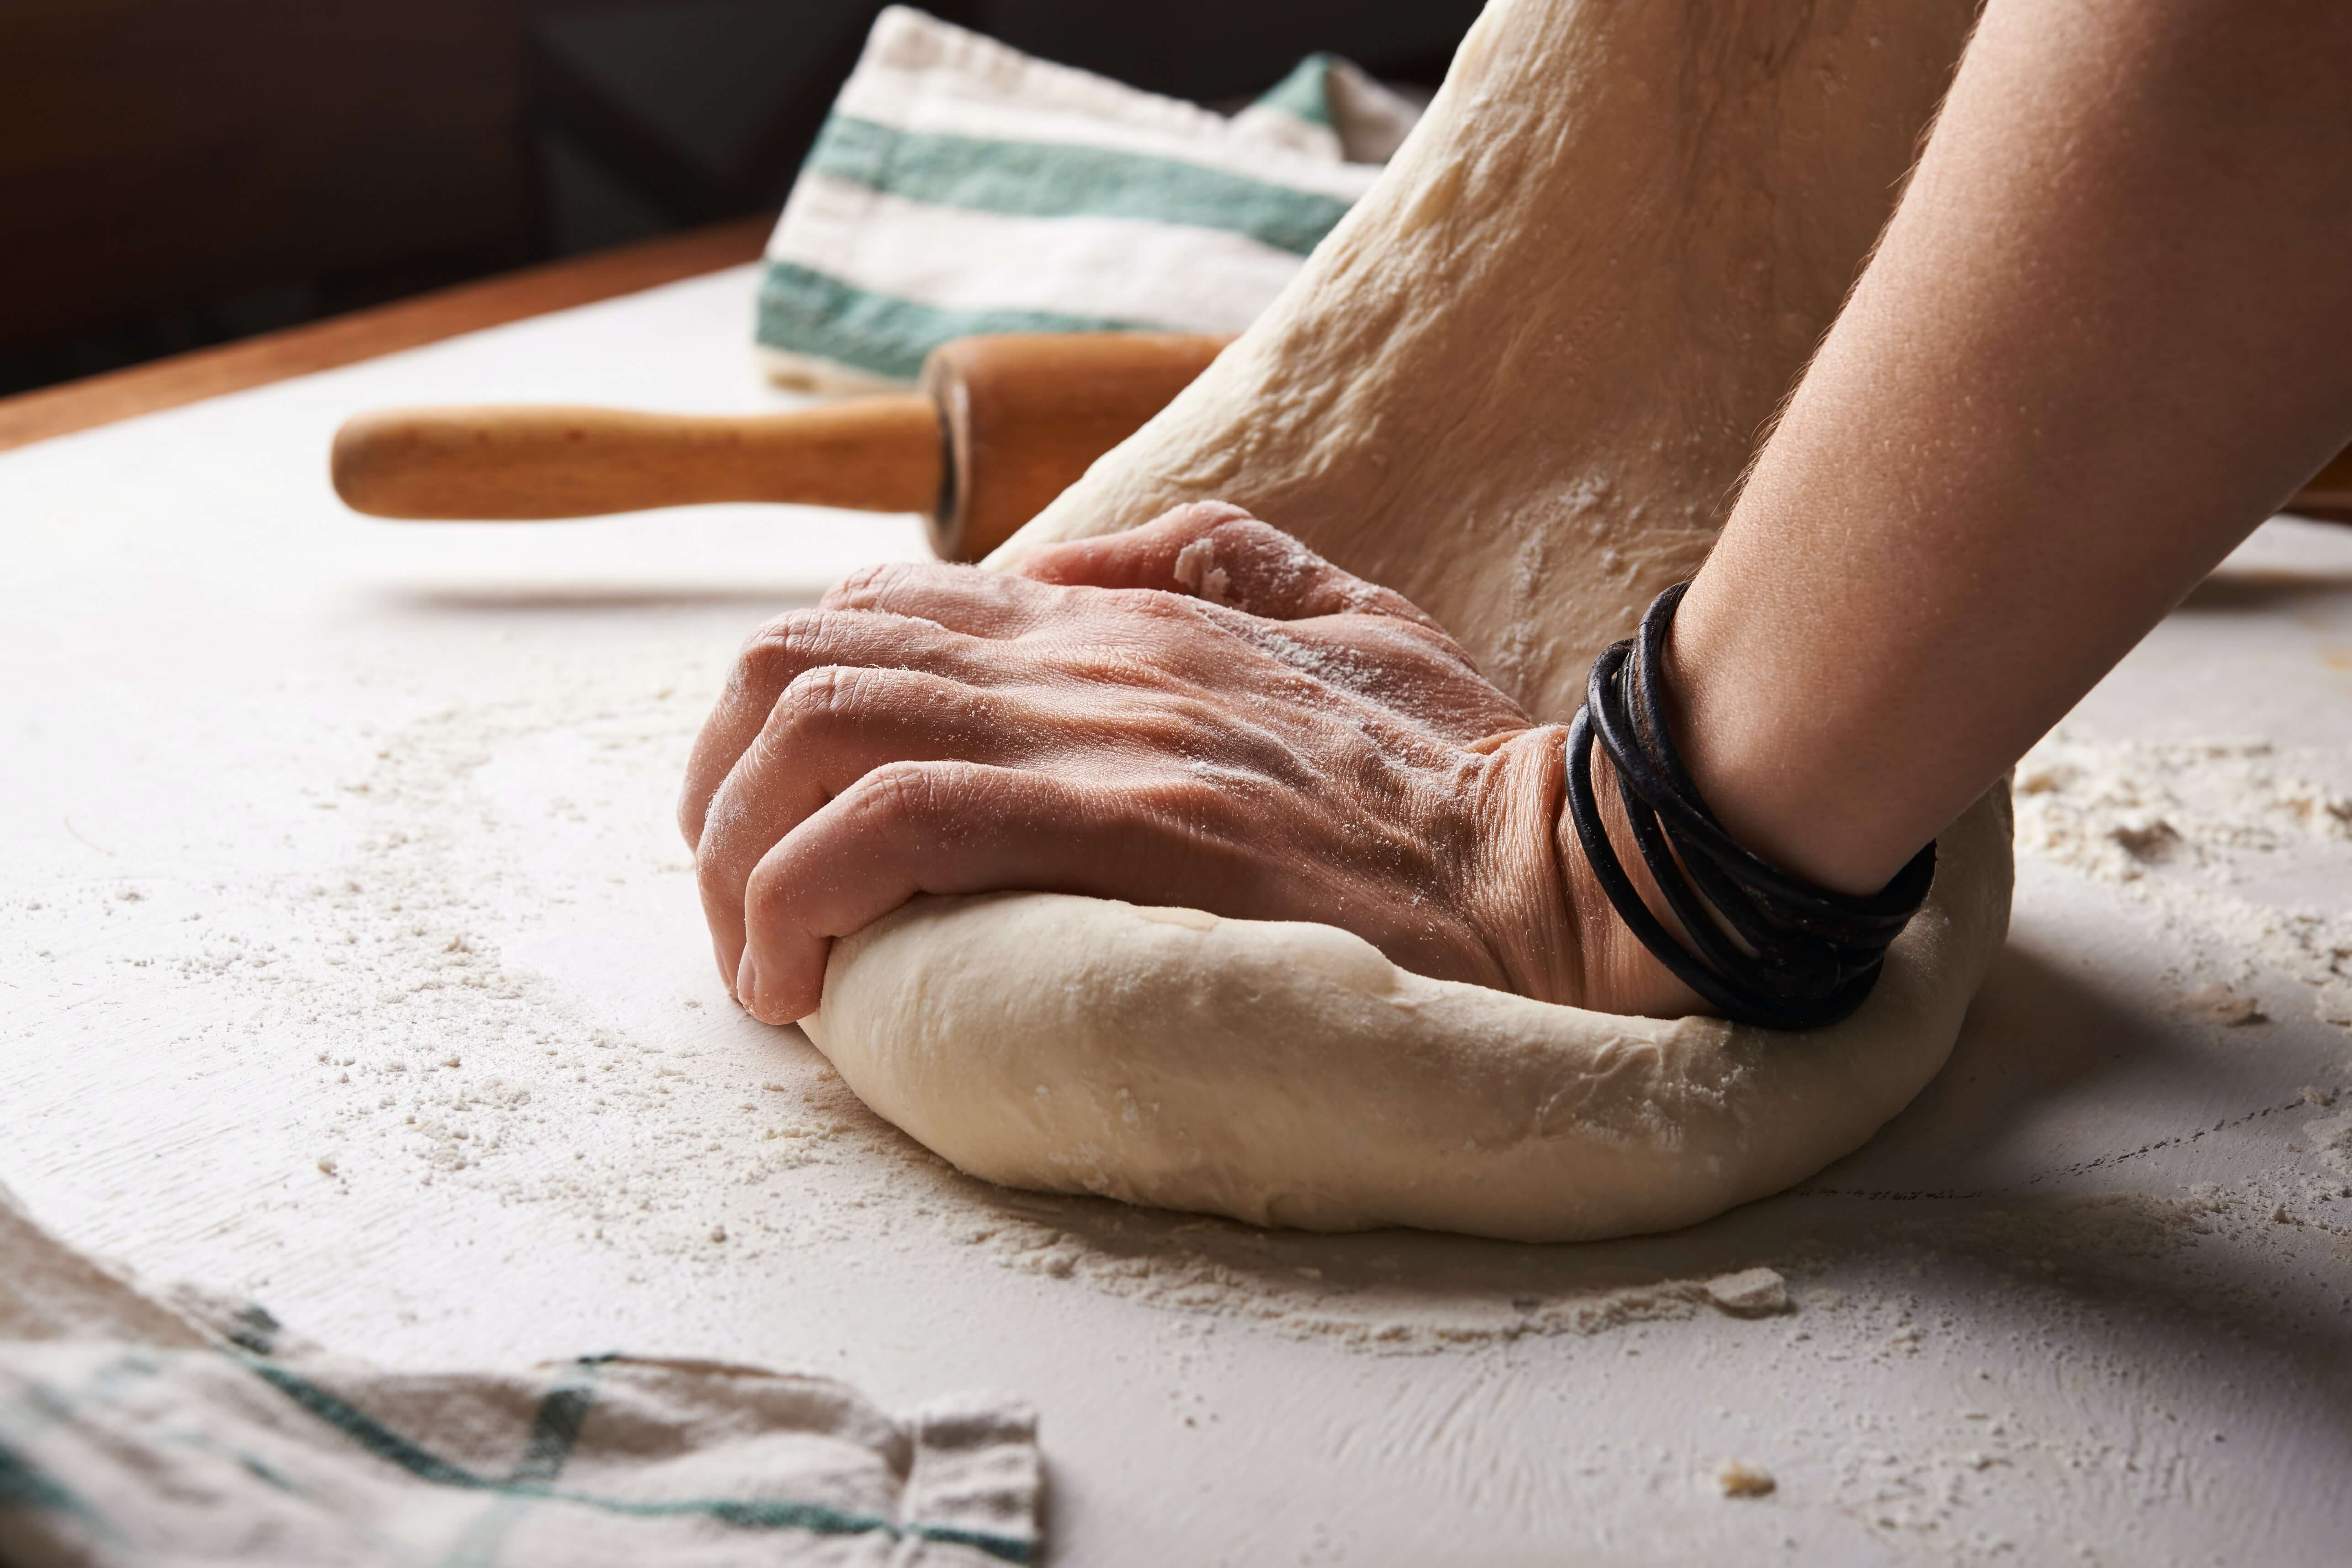 A person kneading dough